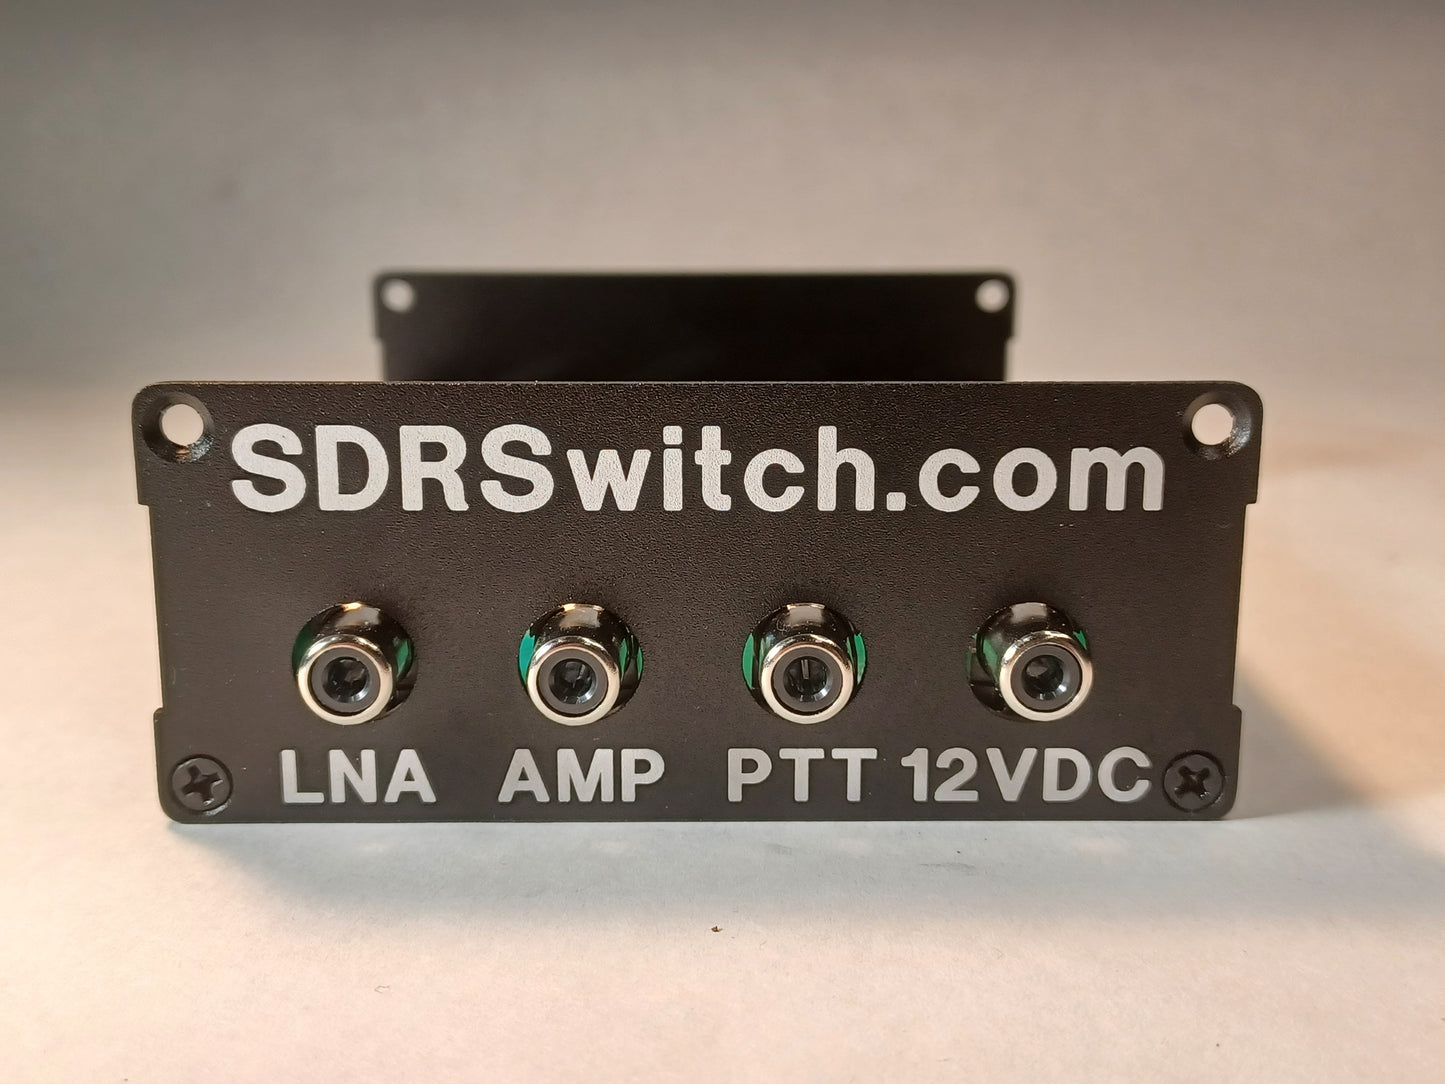 0-70MHz 100W RXin RXout SDR Switch.